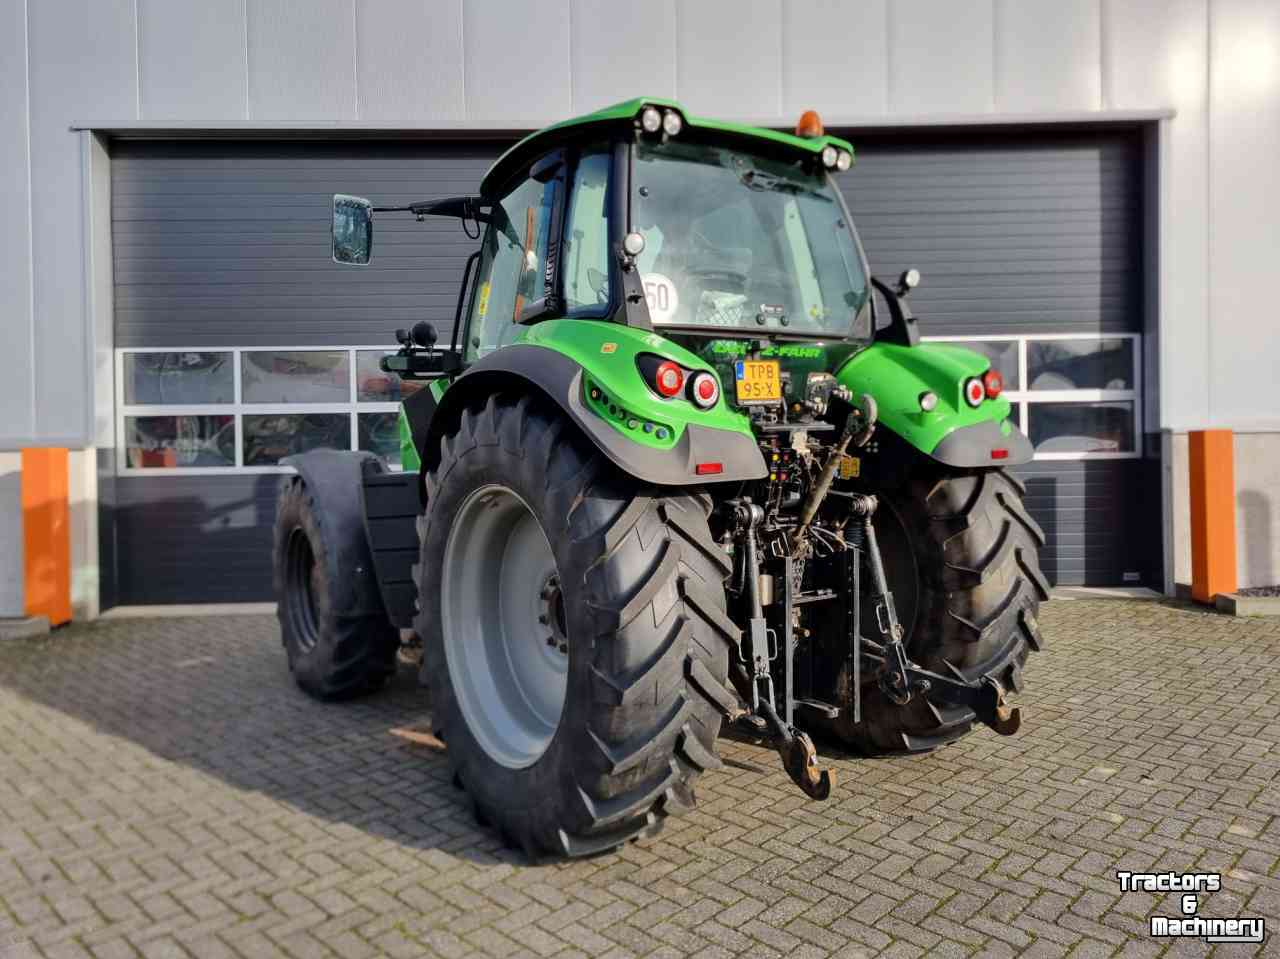 Tractors Deutz-Fahr 6165 RC-Shift